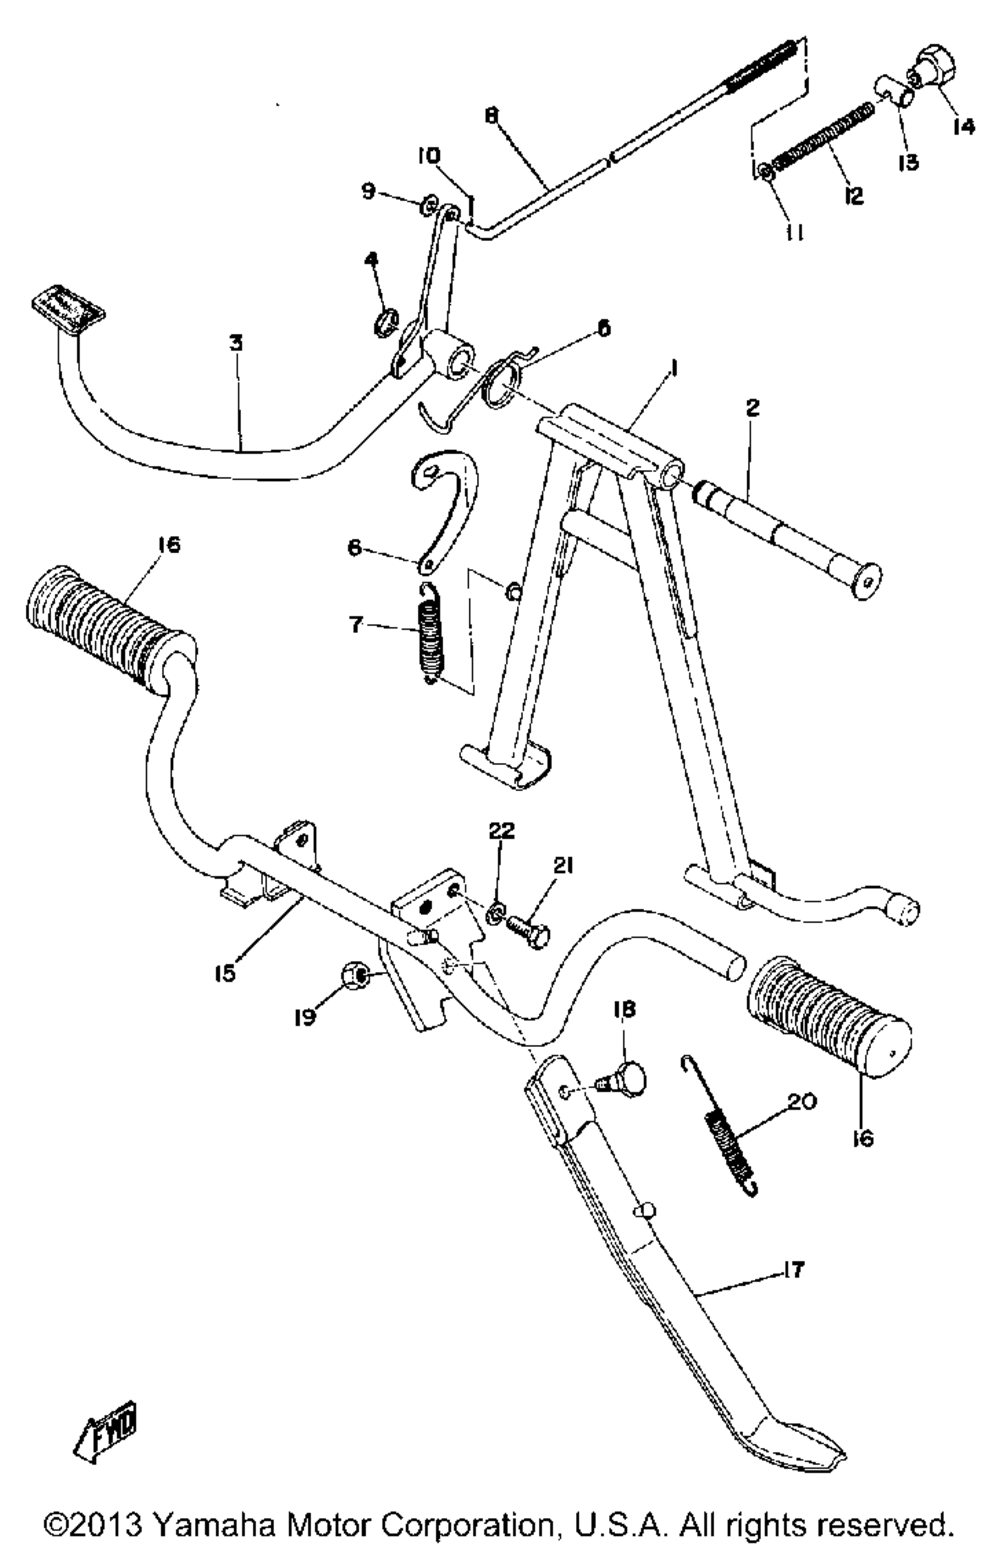 Stand - footrest - brake pedal